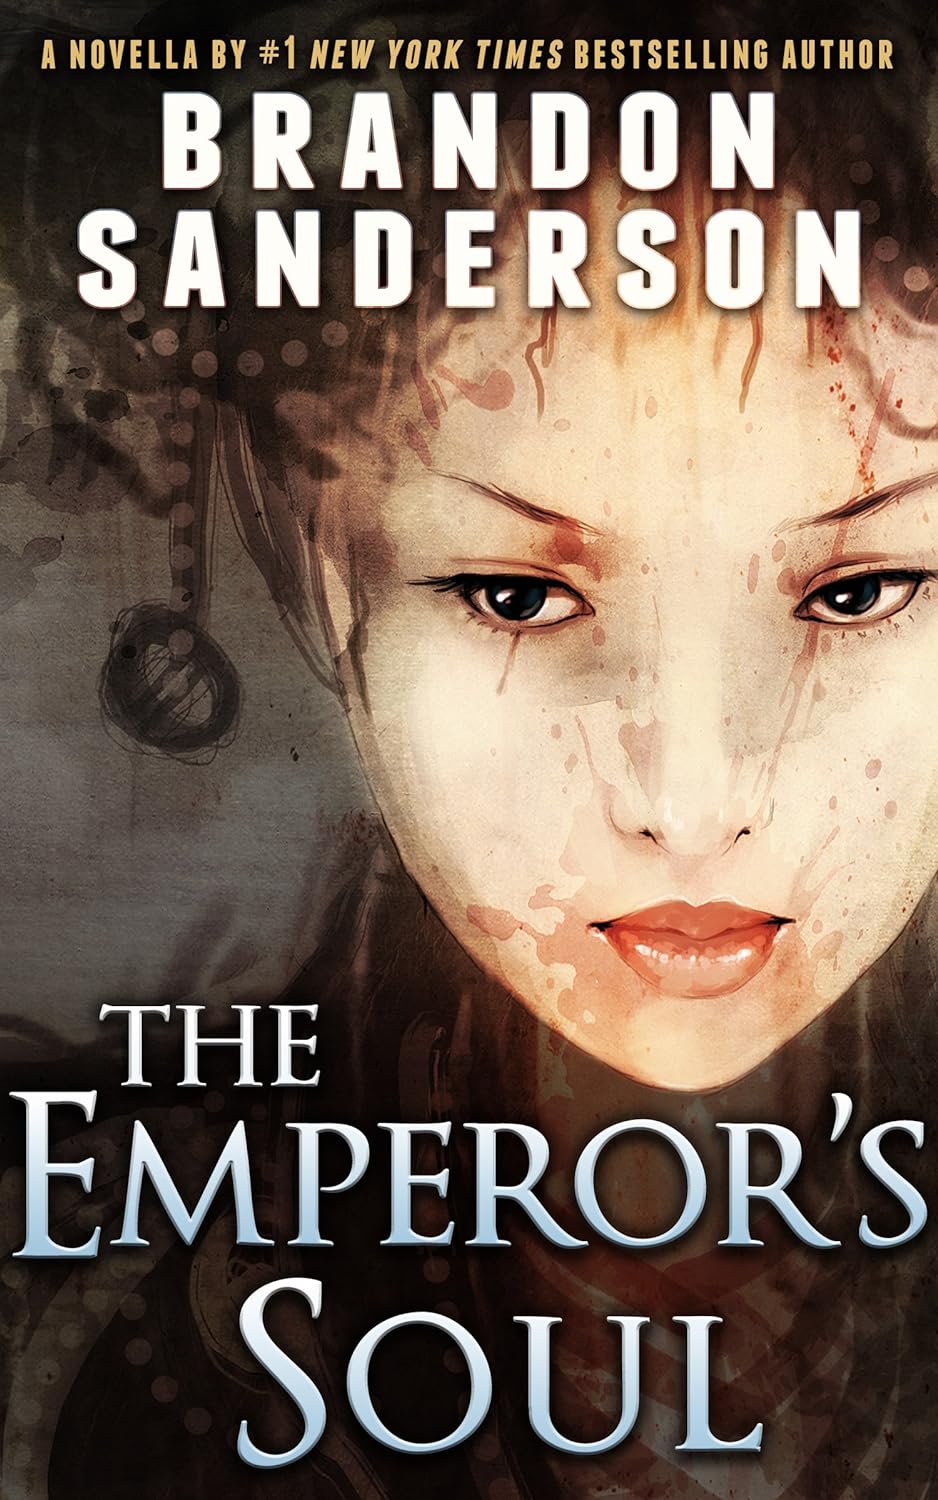 The Emperor's Soul by Brandon Sanderson (Kindle eBook) $0.99 via Amazon